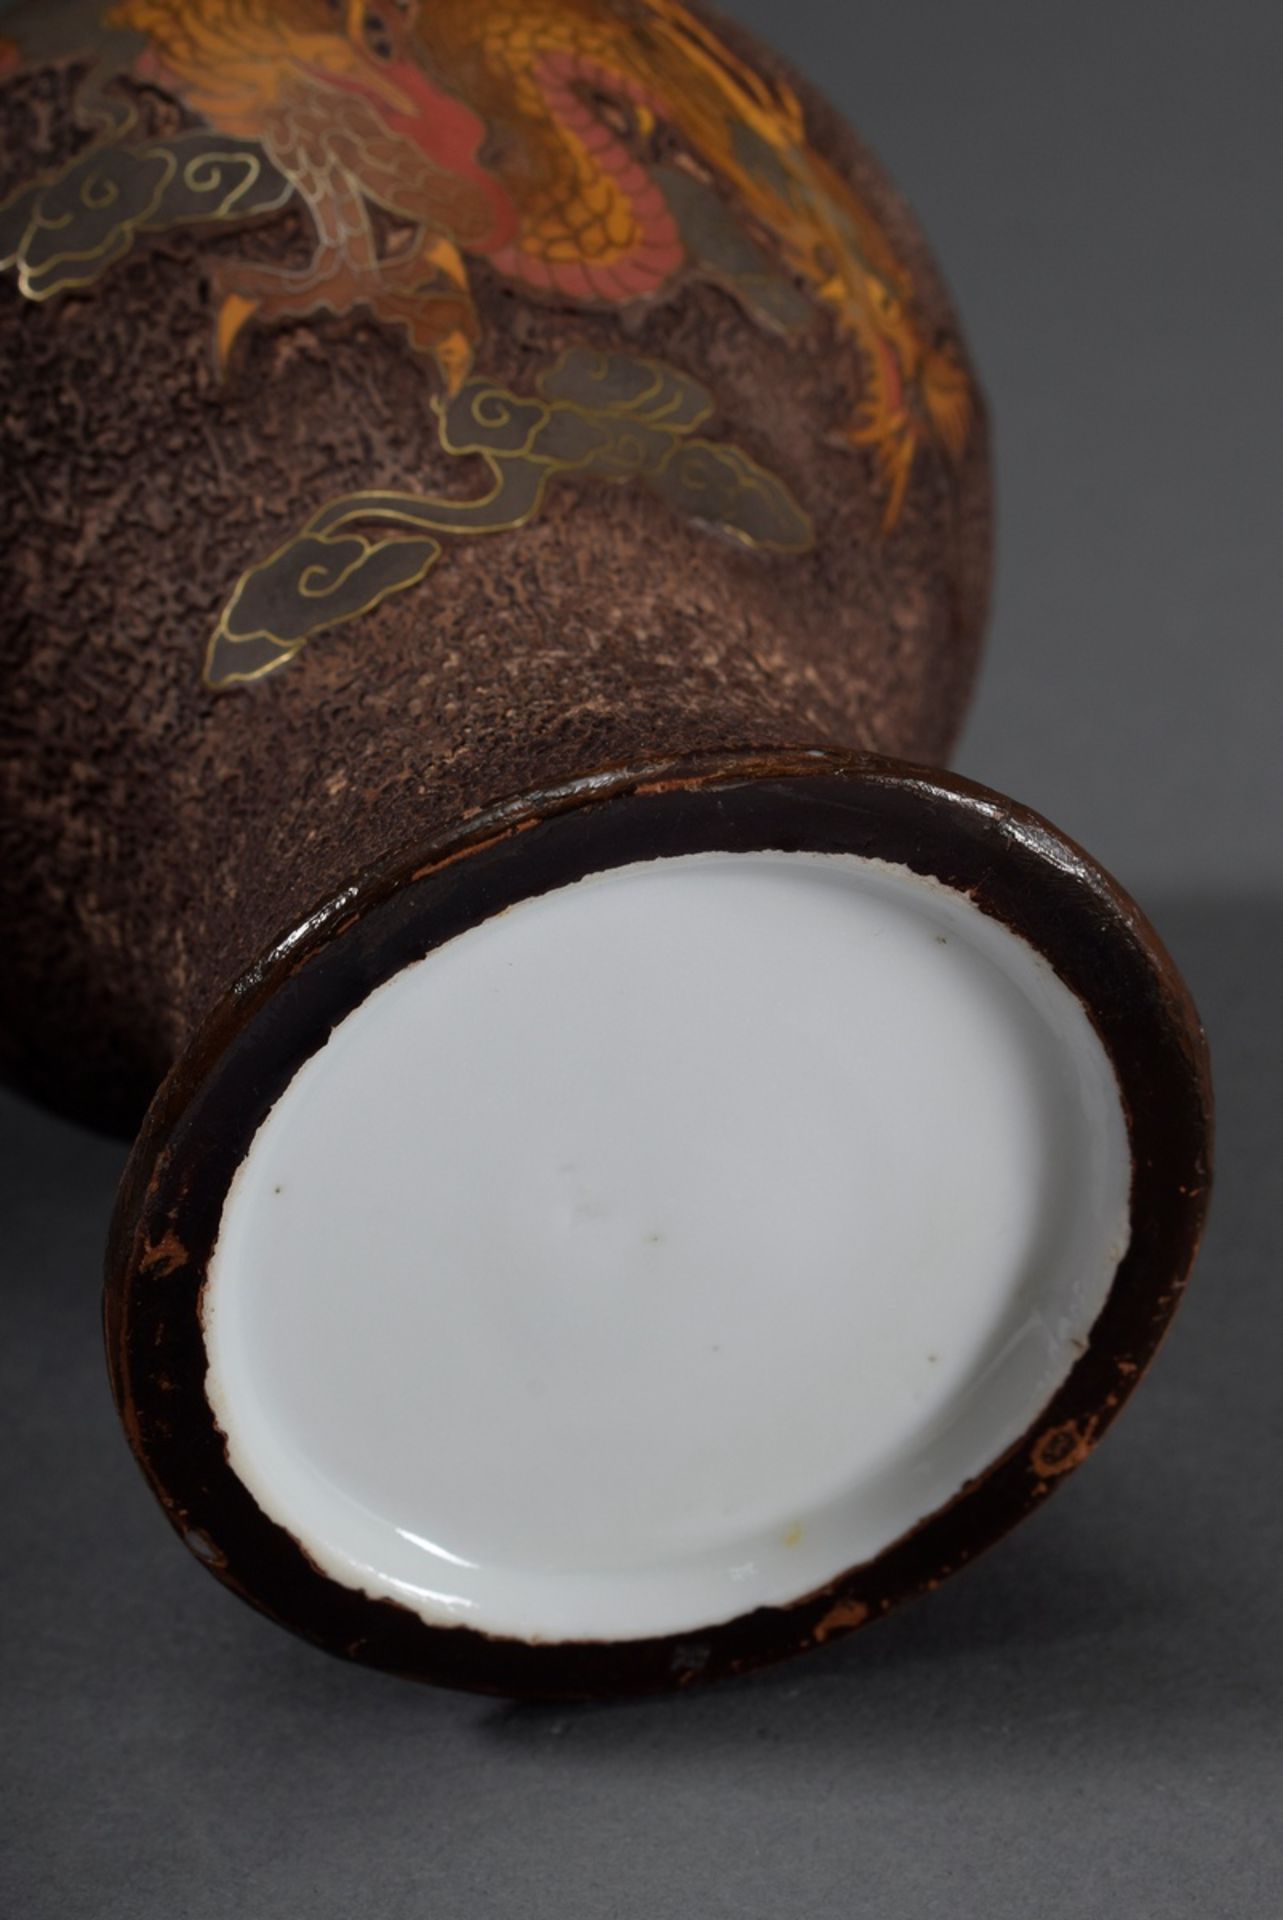 Japanische Treebark Porzellan Vase mit Cloisonné Dekor "Gelber Wolkendrache mit - Image 5 of 5